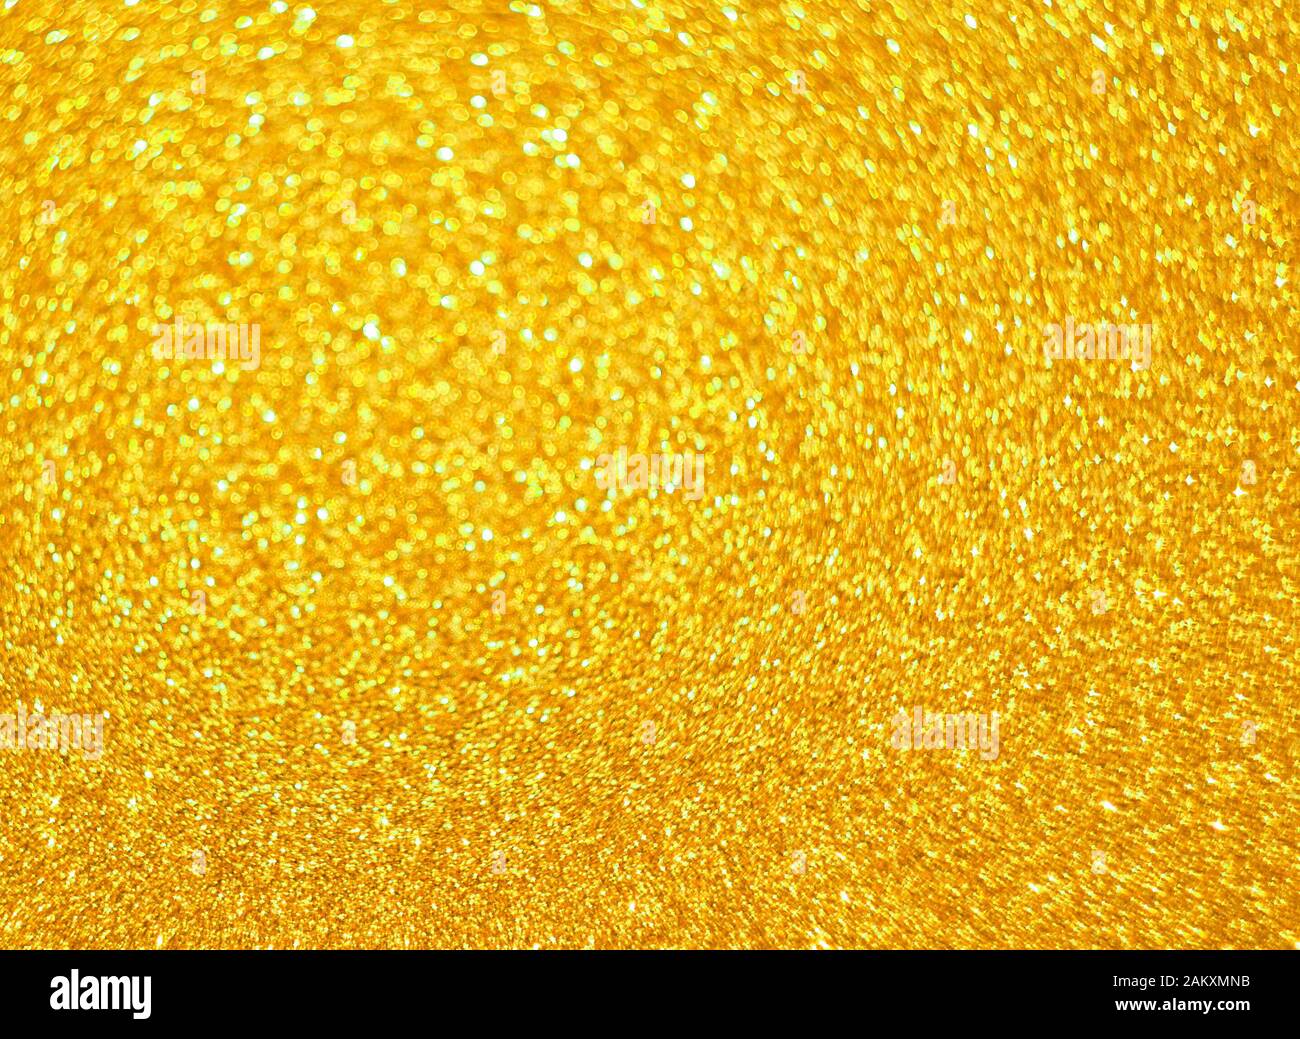 Hình ảnh nền vàng sáng là một điều kỳ diệu để mắt bạn cảm nhận. Hãy xem hình này và cảm nhận sự rực rỡ của nền vàng sáng!